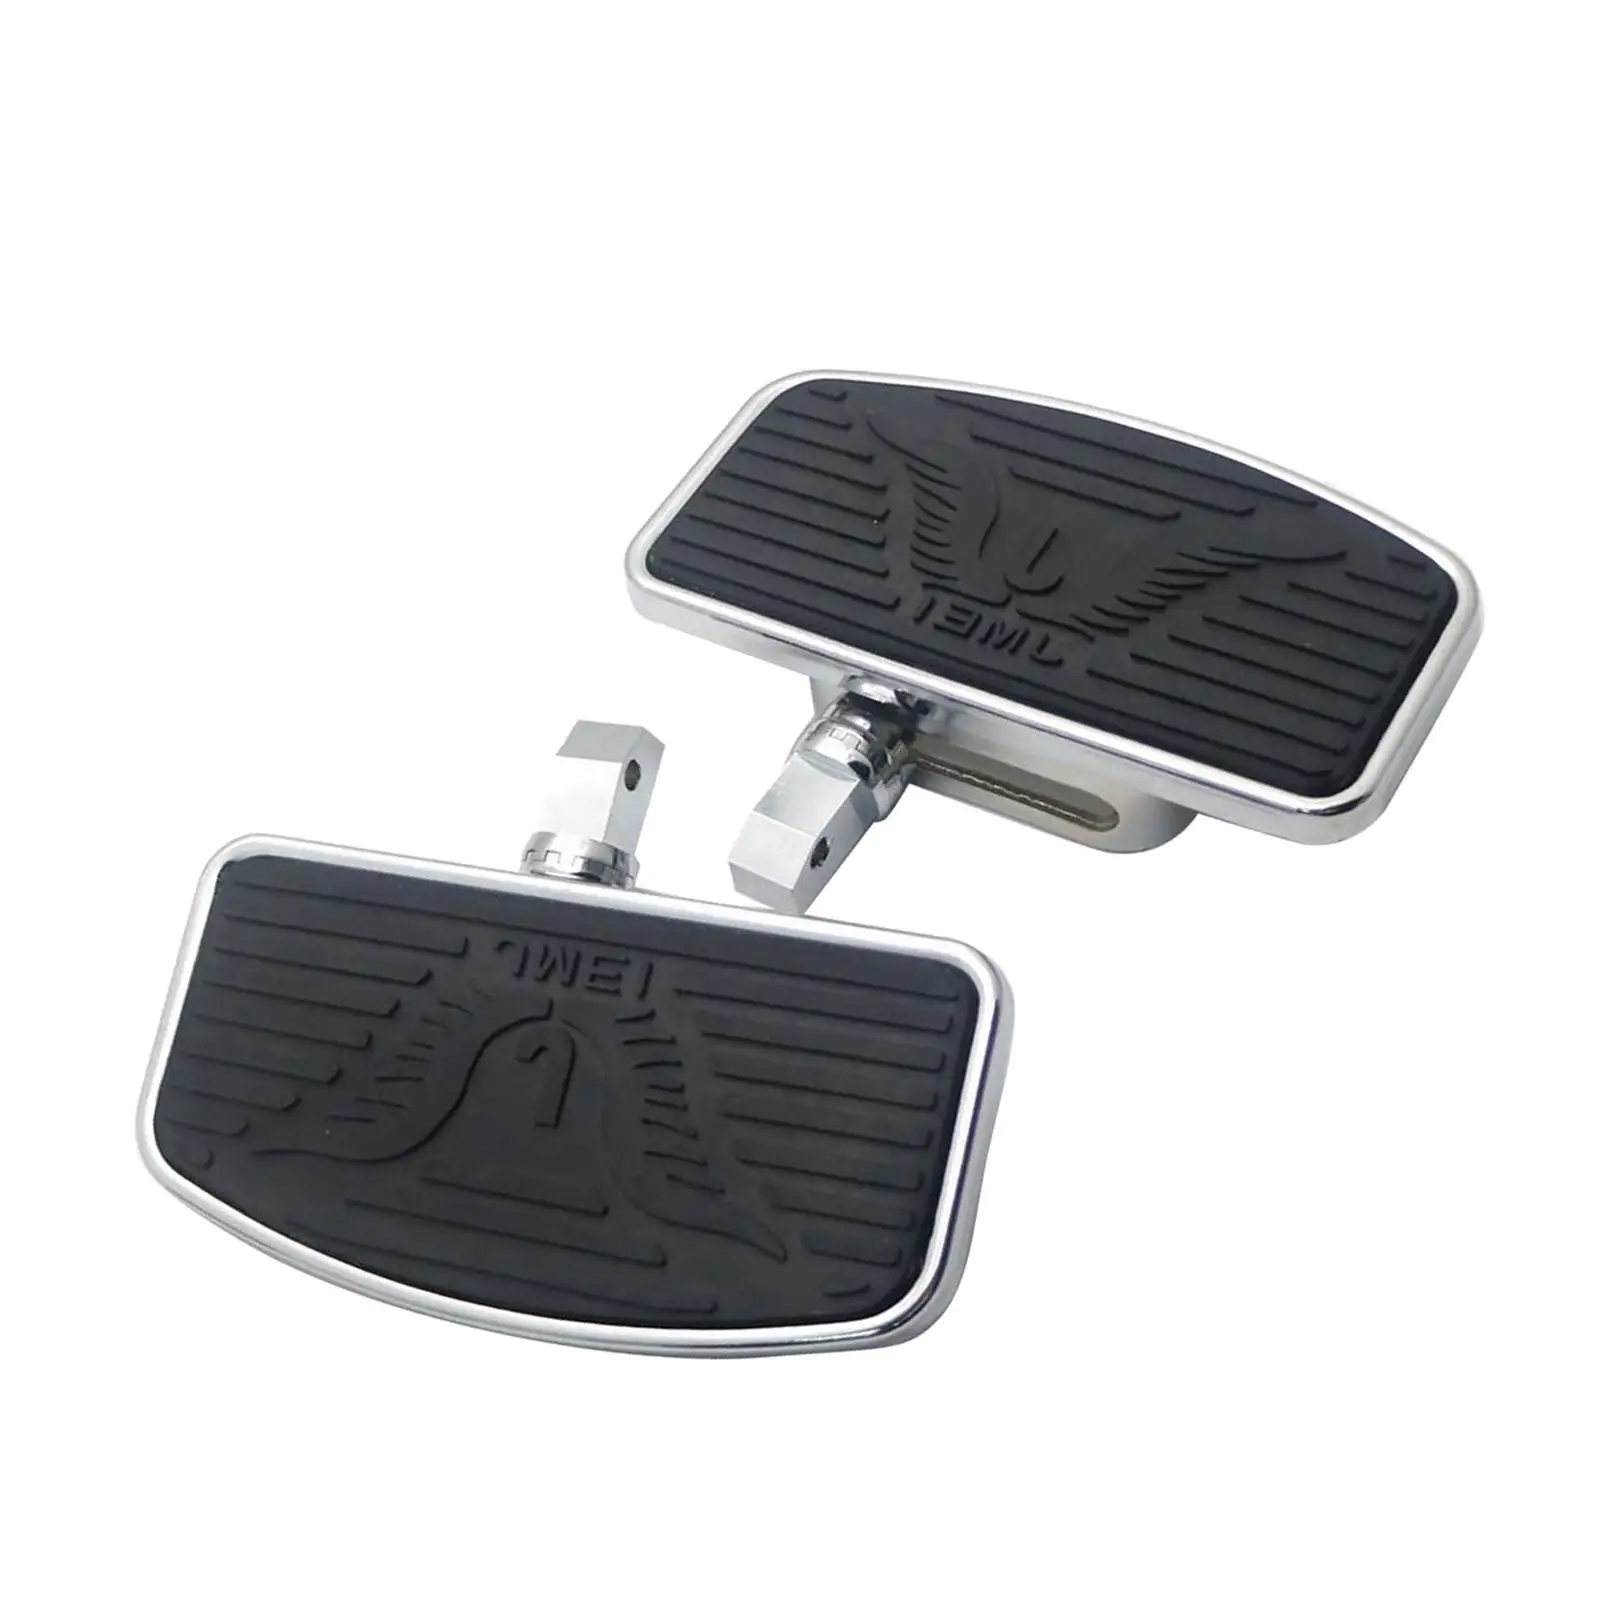 Ike passenger footboard foot pegs footrest pedals for honda vtx1300 vtx1800 vt750 black thumb200